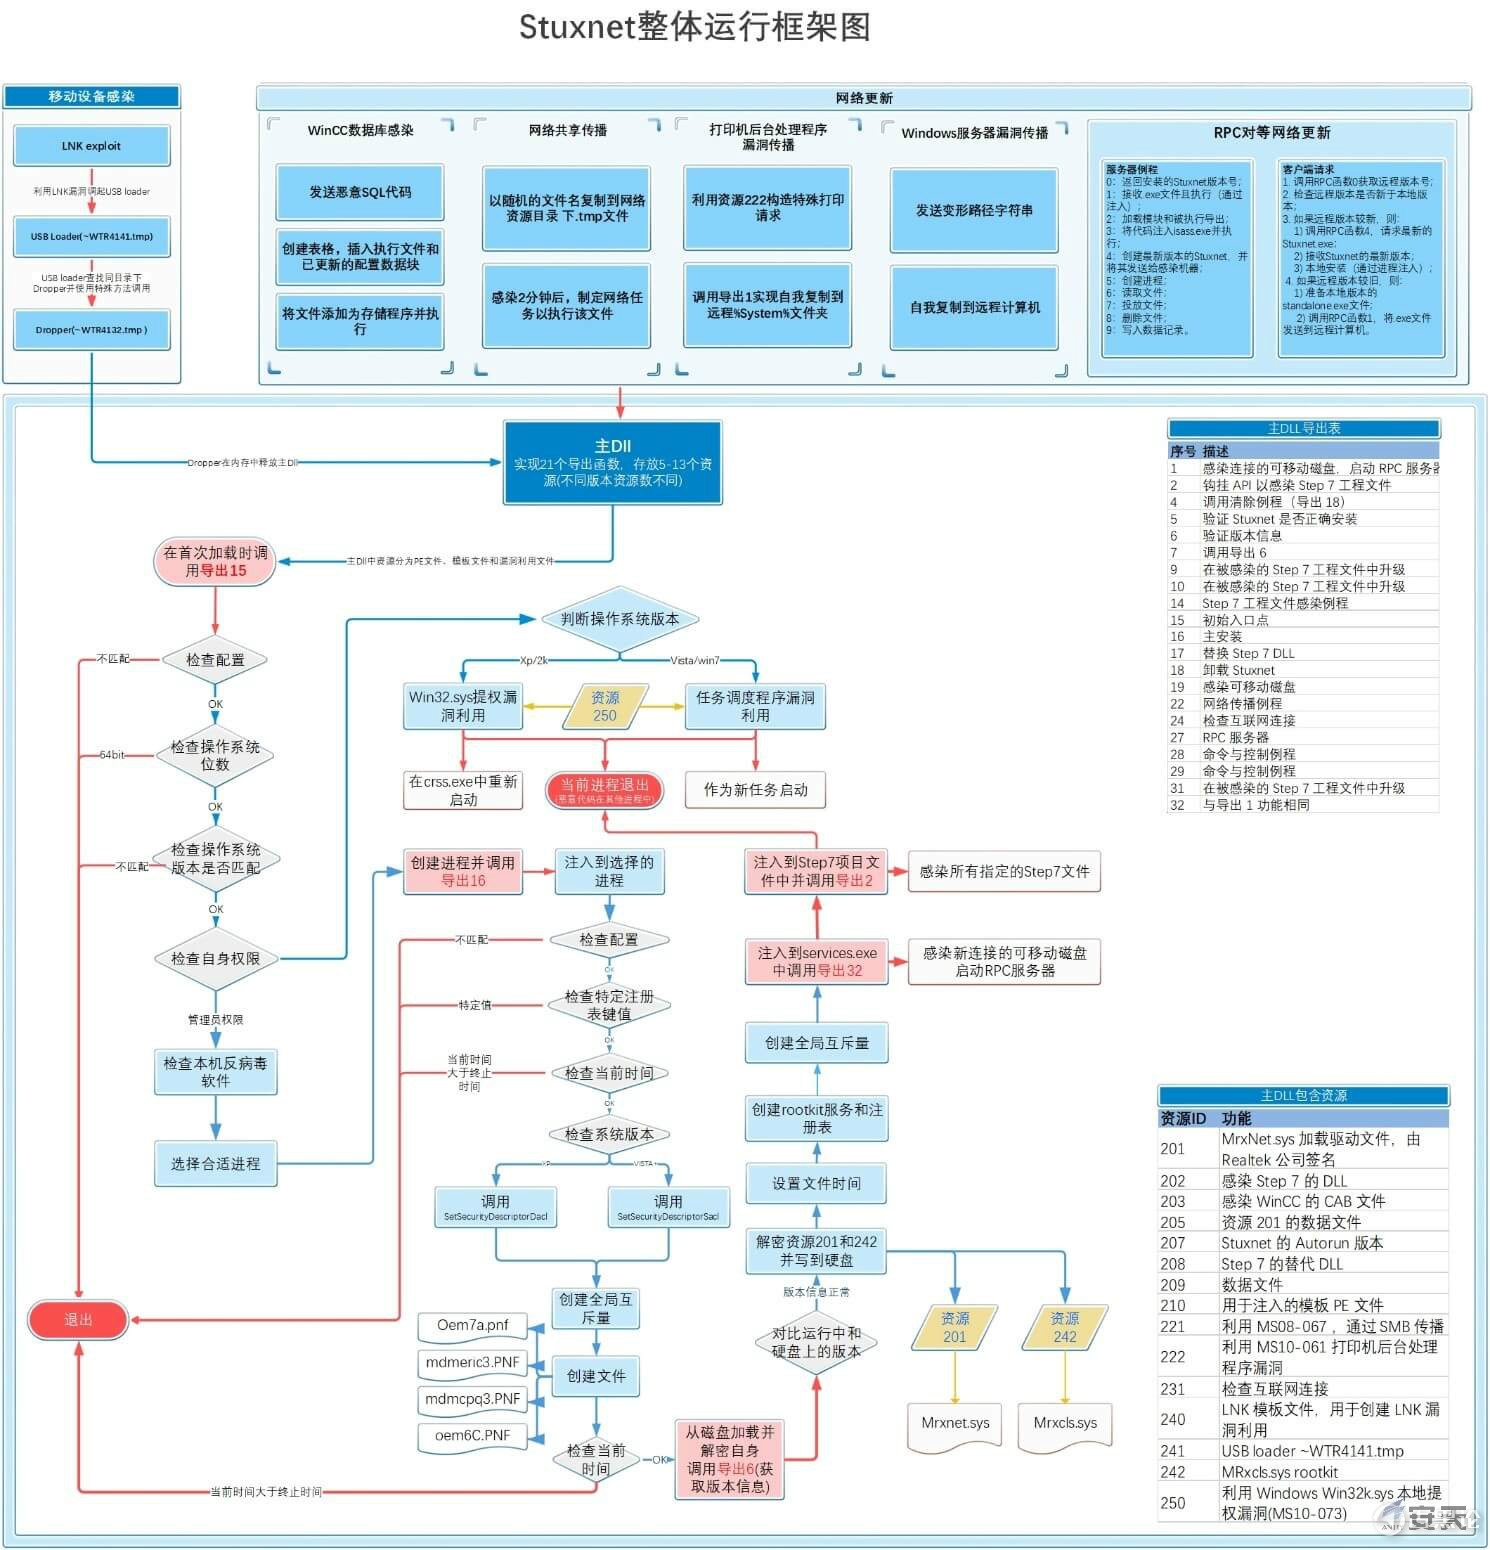 有史以来最复杂的软件——Stuxnet 震网 3-2.jpg